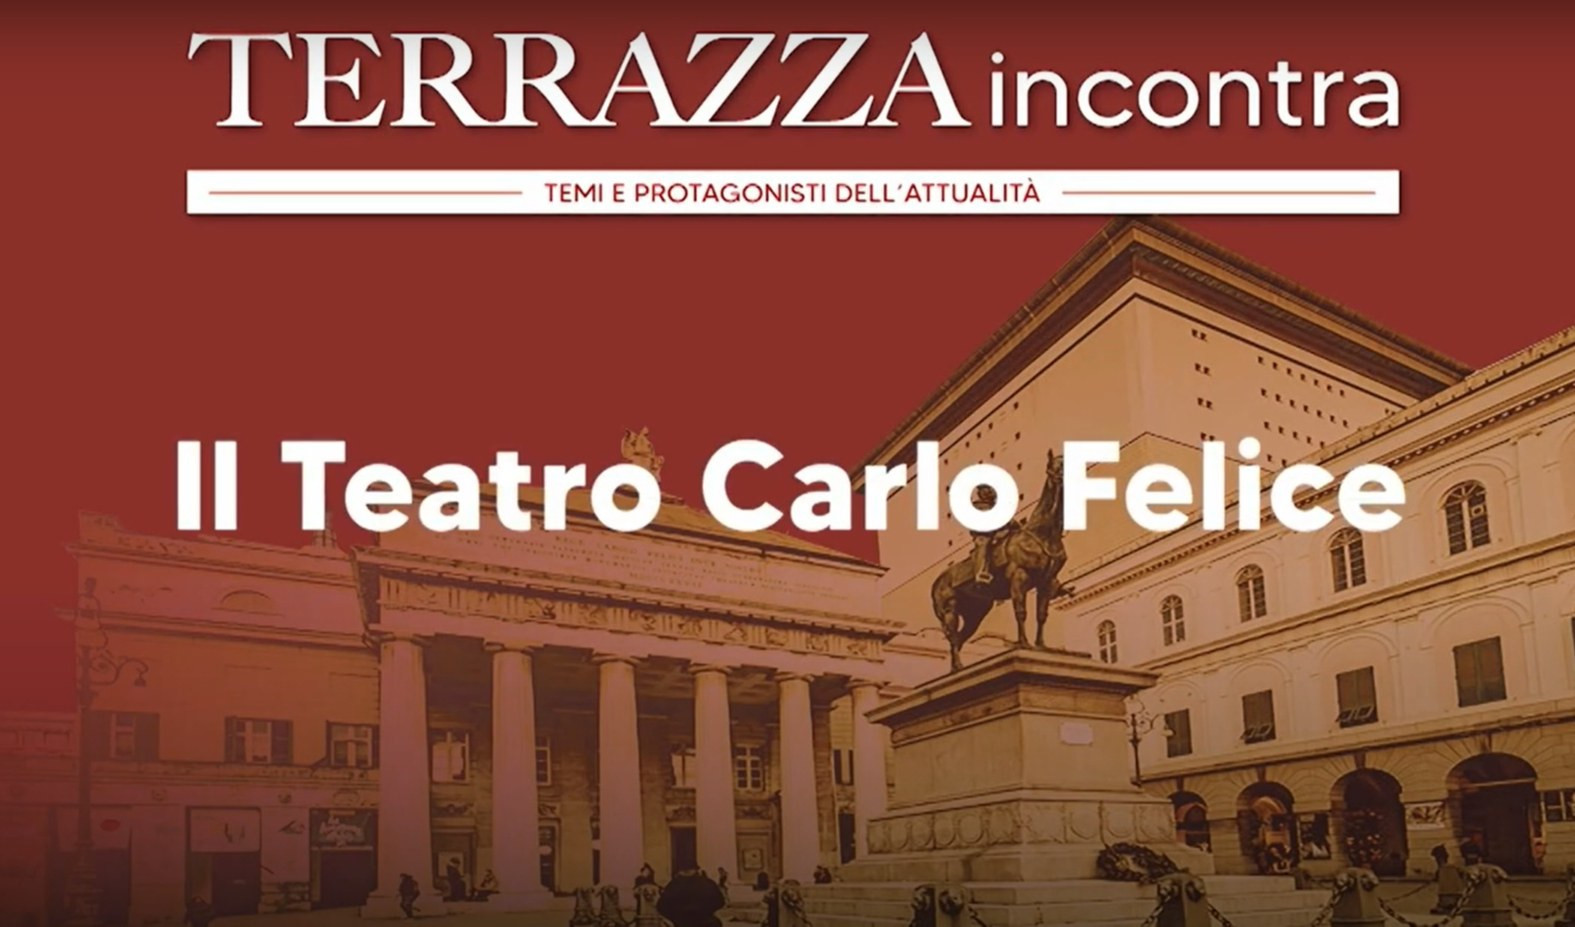 Terrazza incontra il Teatro Carlo Felice: gli obbiettivi, la stagione, le grandi produzioni e il Festival di Nervi